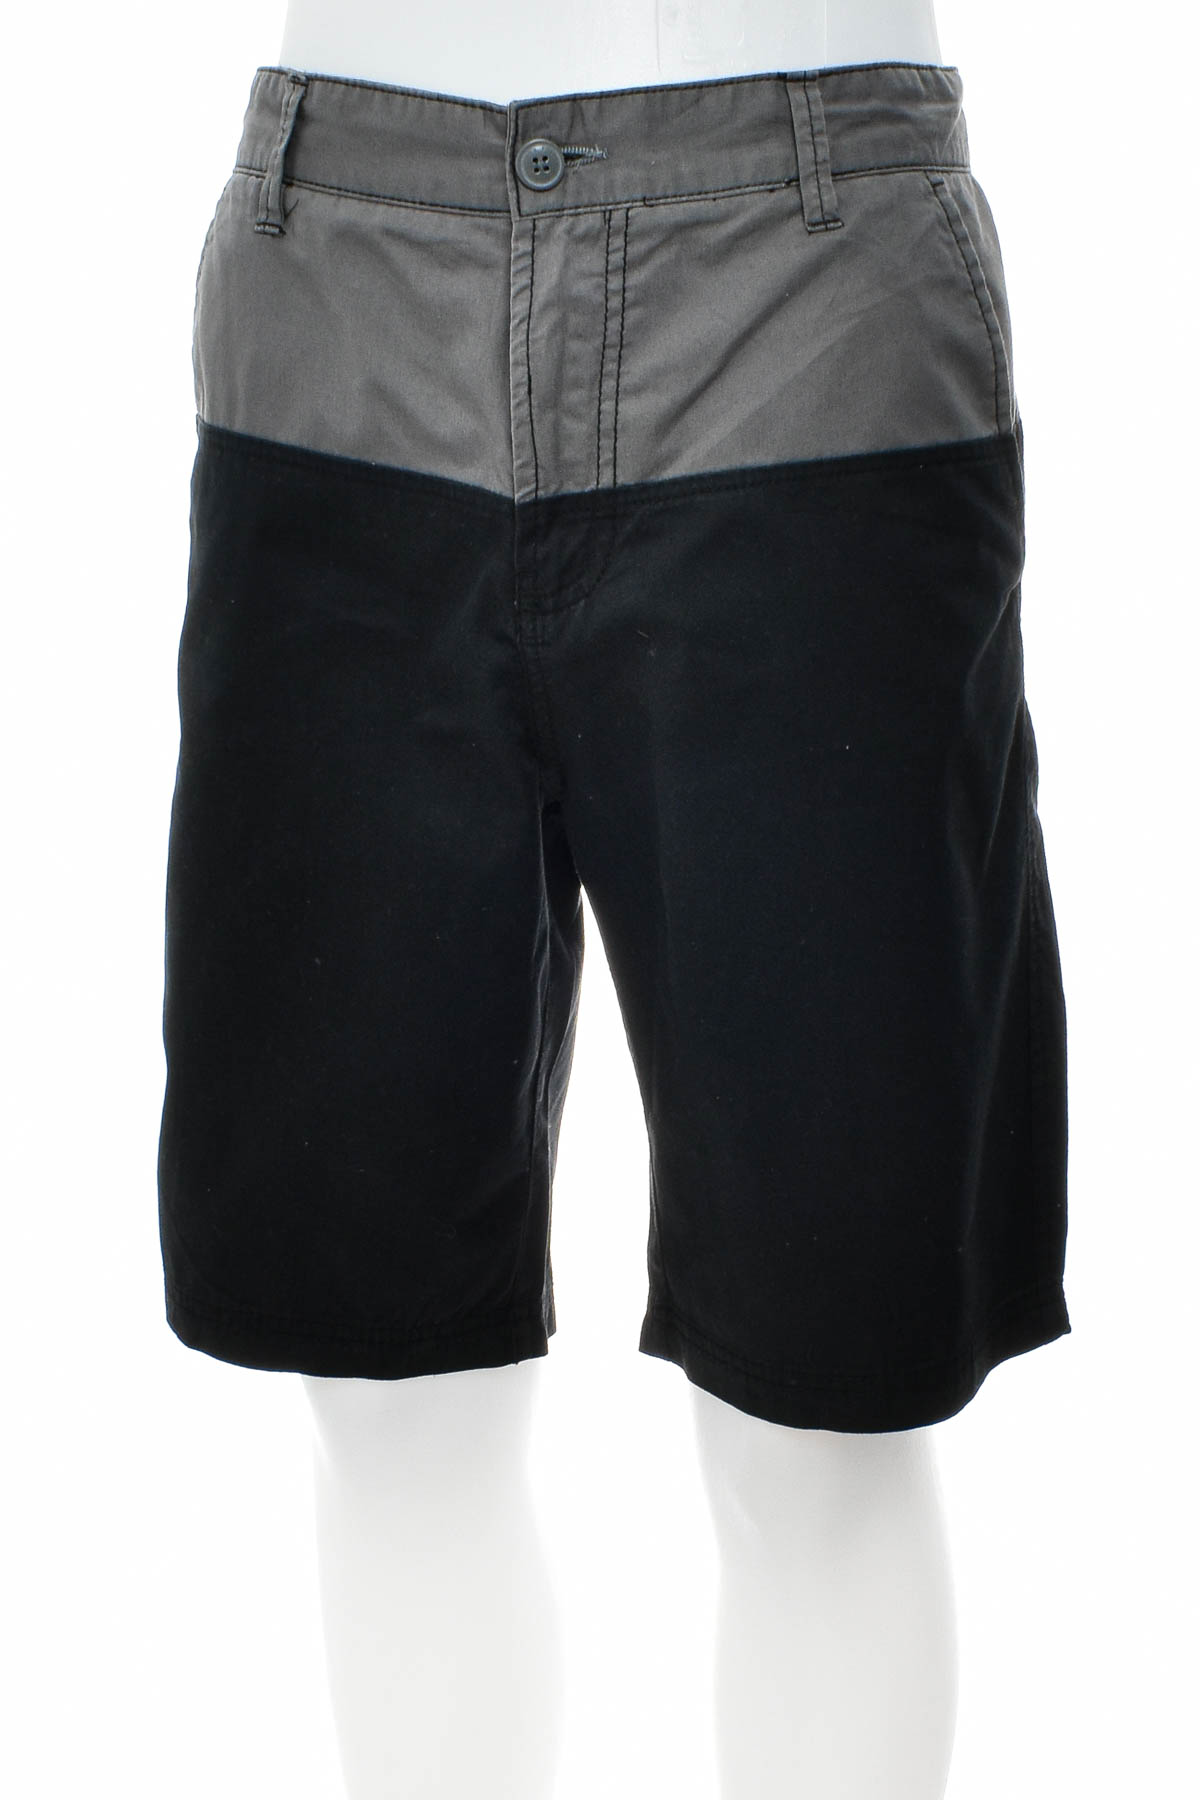 Men's shorts - Pierre Cardin - 0